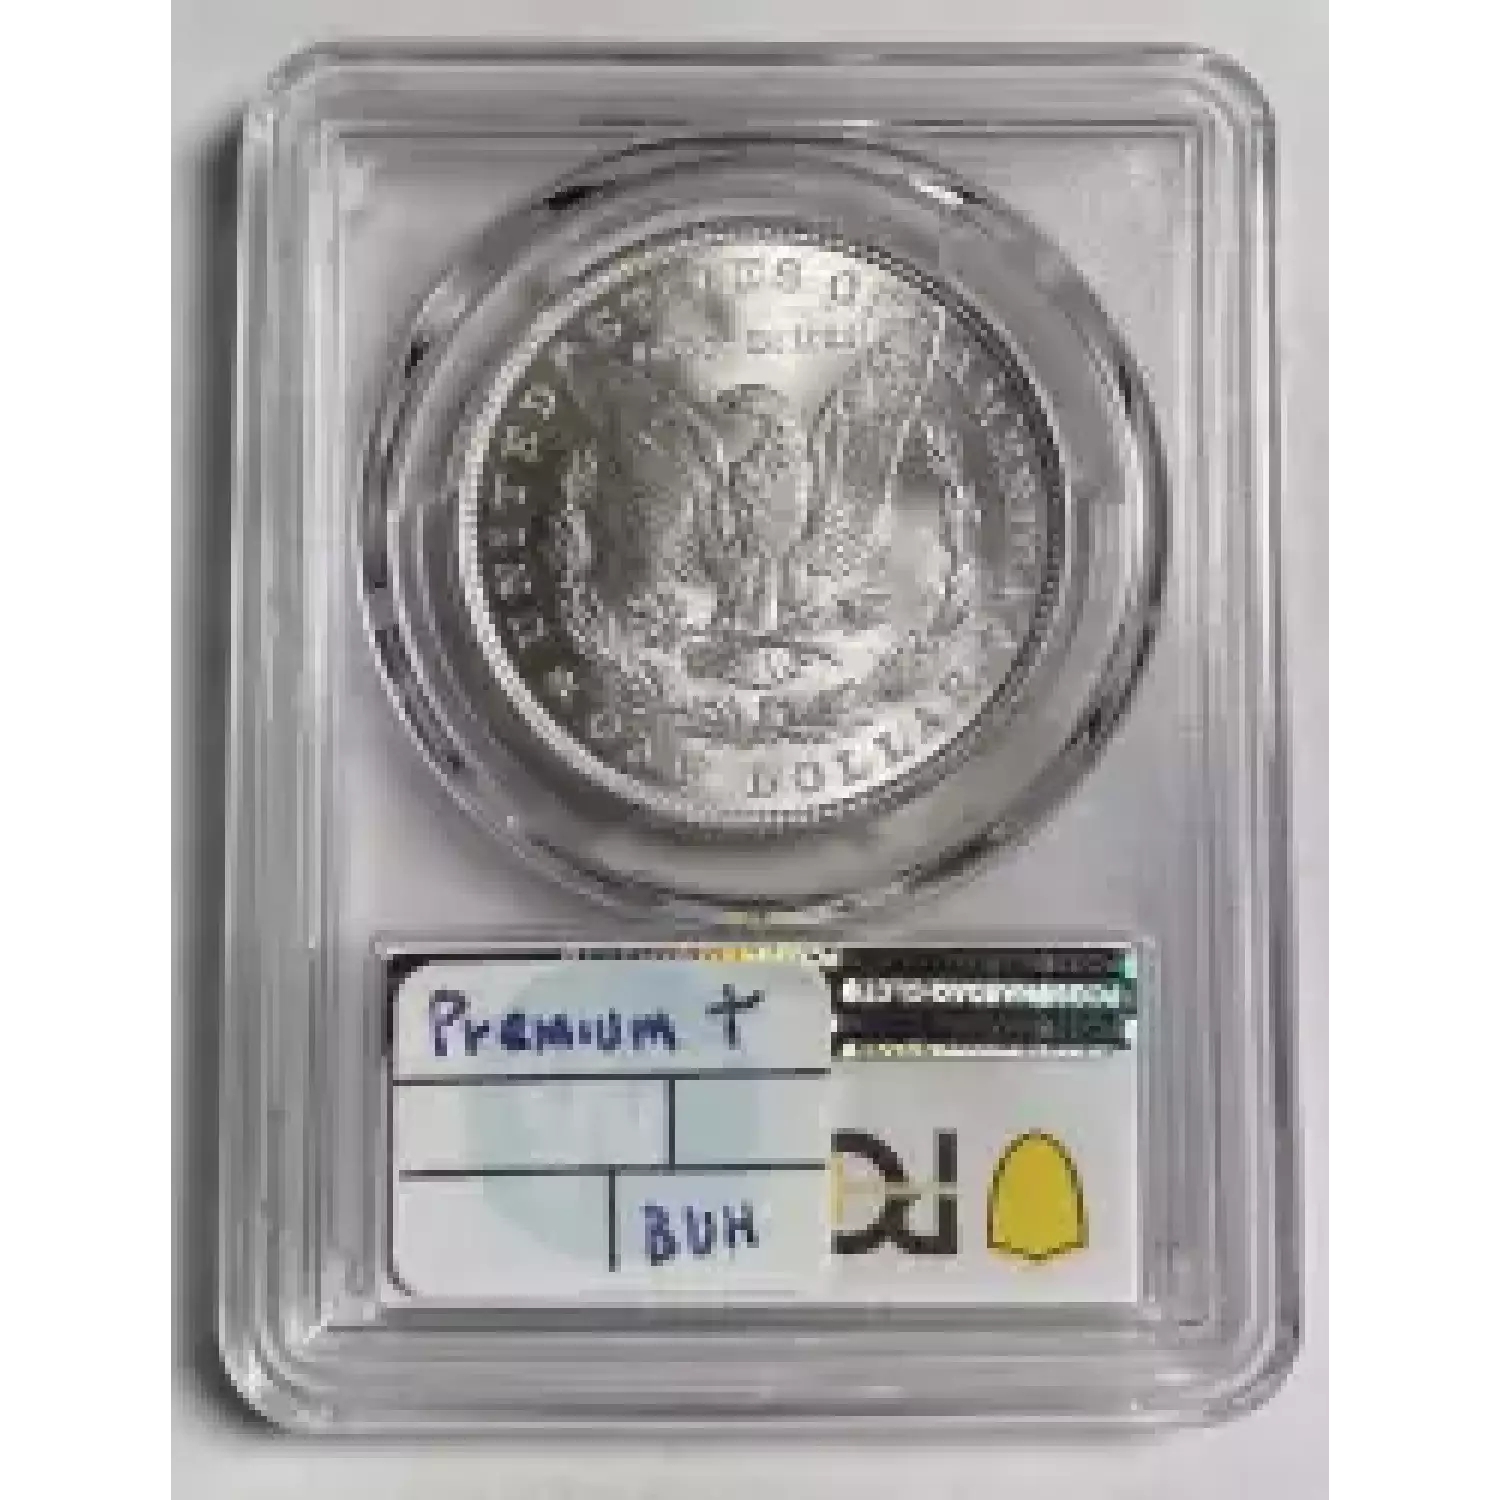 1881 $1 (2)